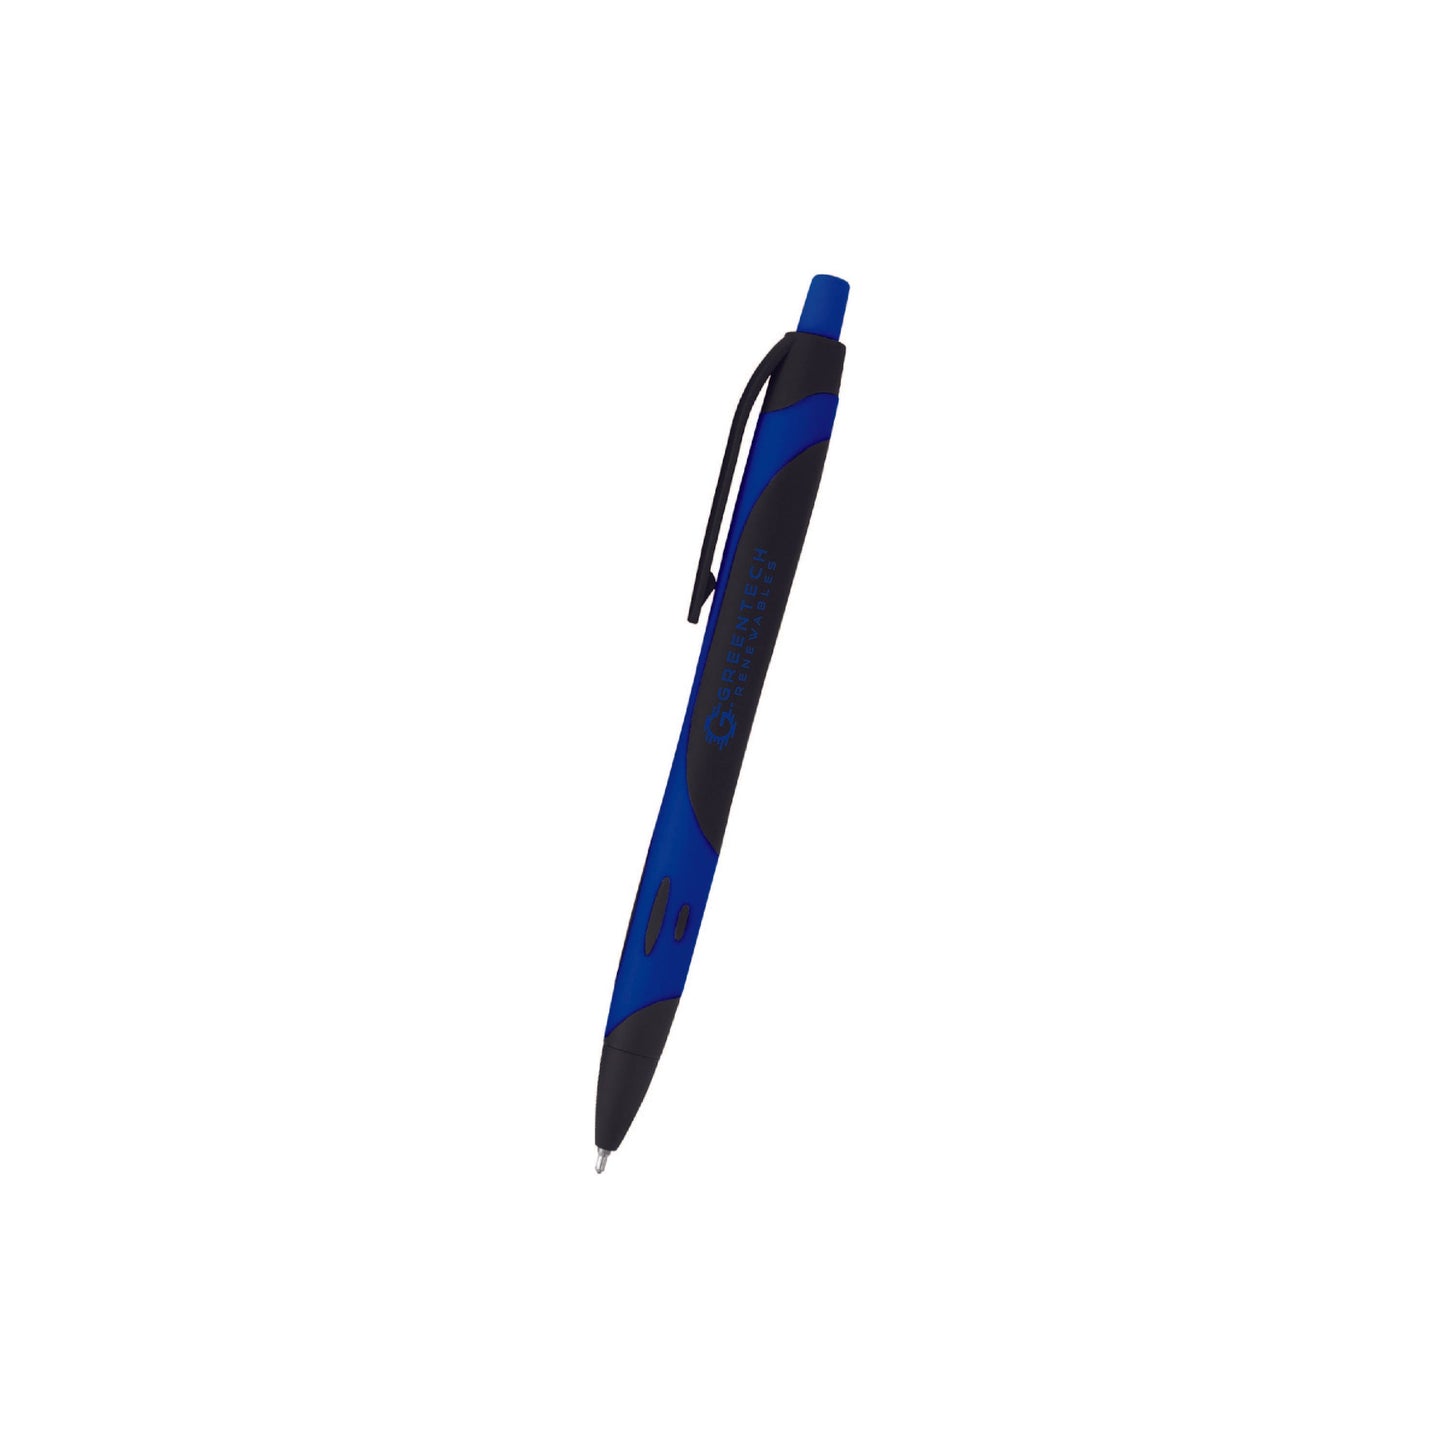 Two-Tone Sleek Rubberized Pen #833 - Qty: 250